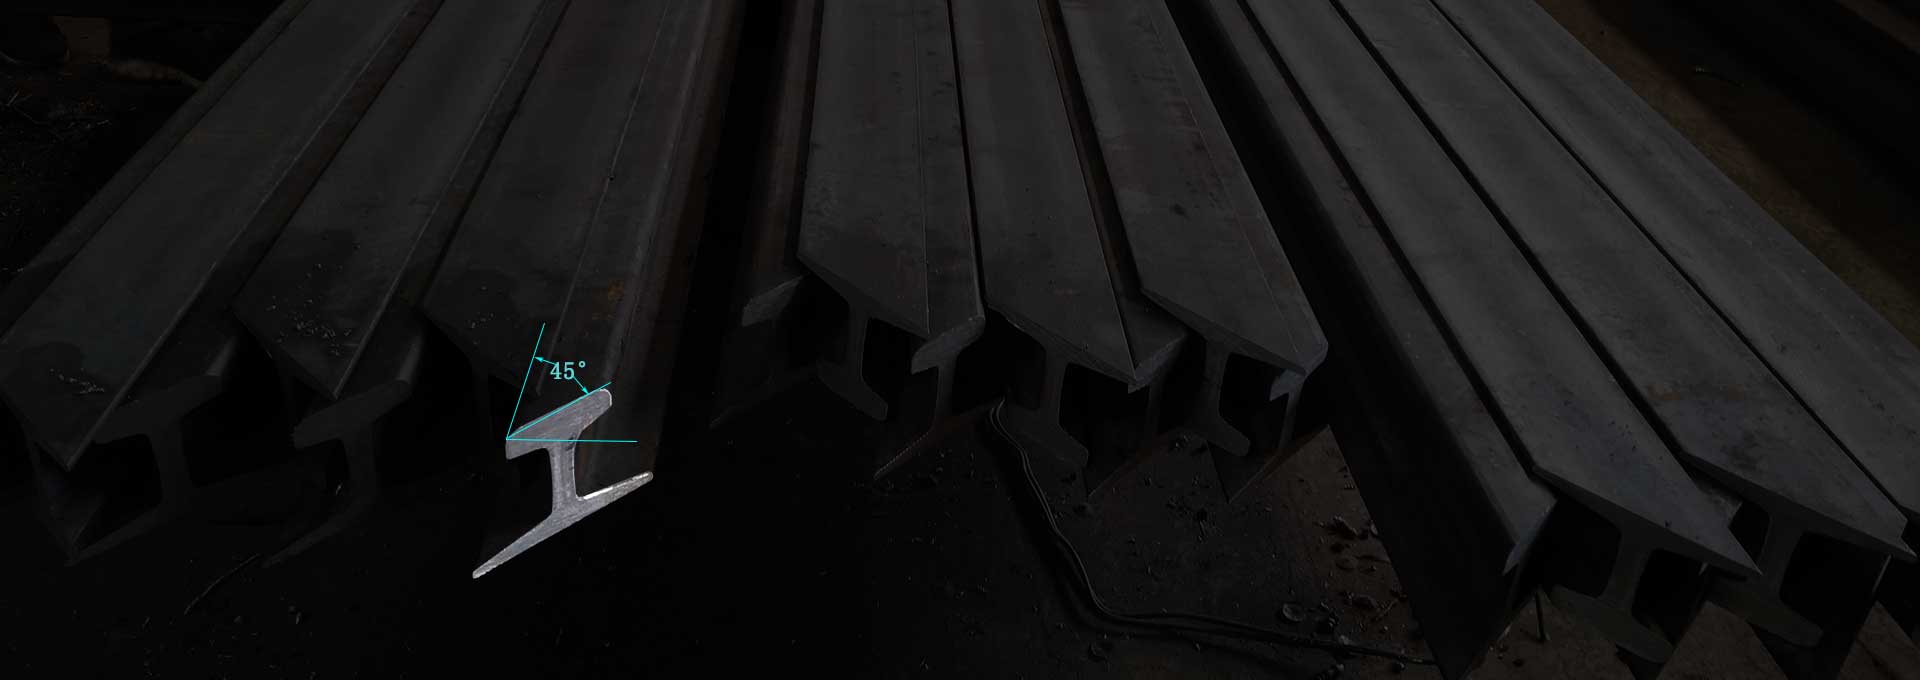 45 degree cutting steel rail